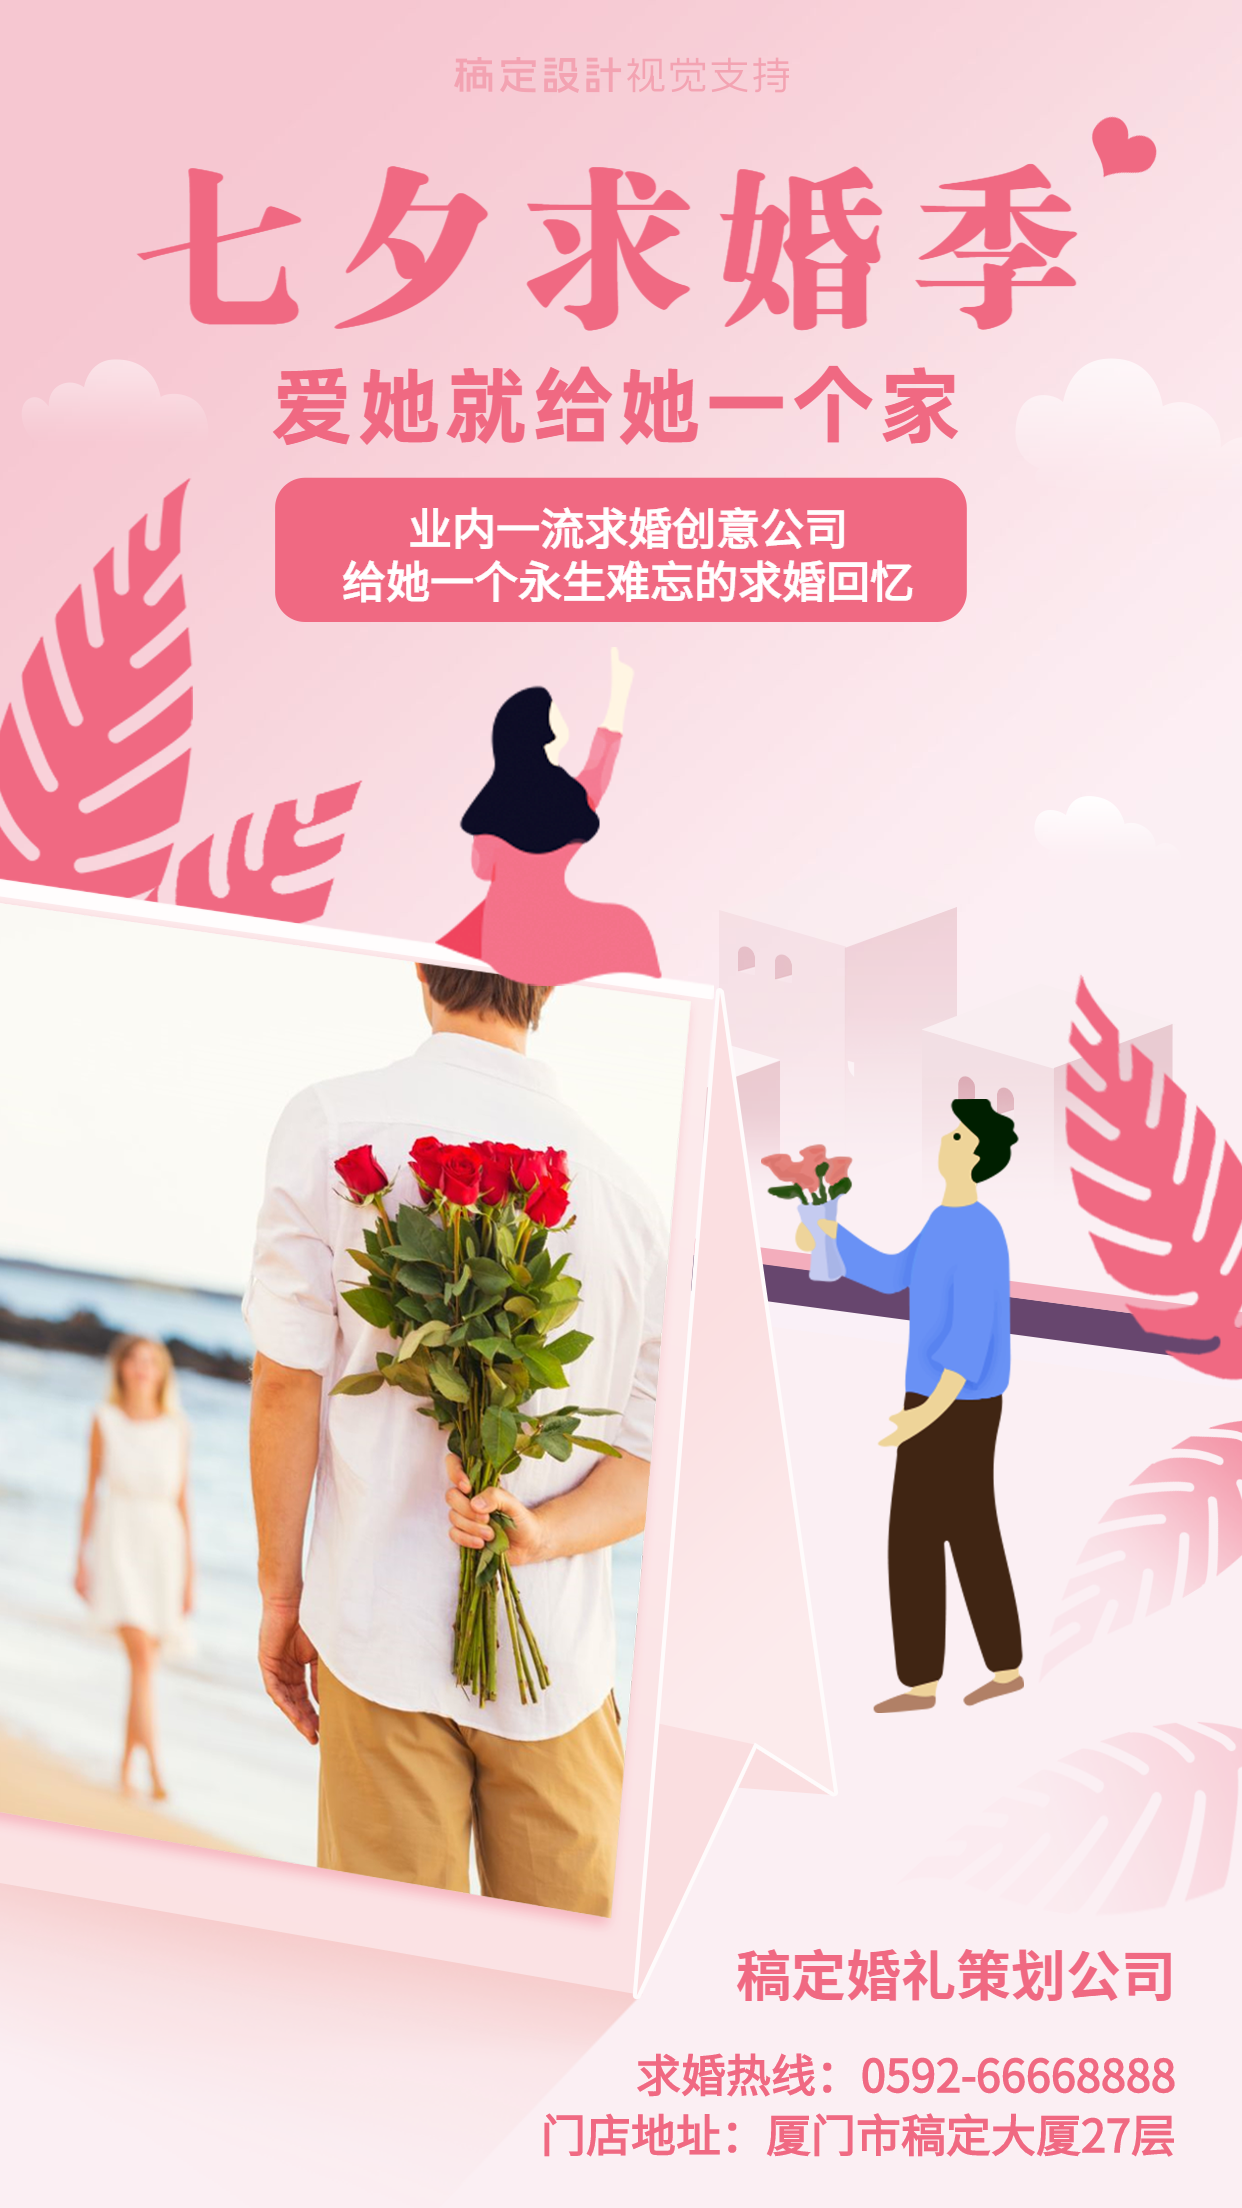 婚庆七夕求婚策划宣传海报预览效果